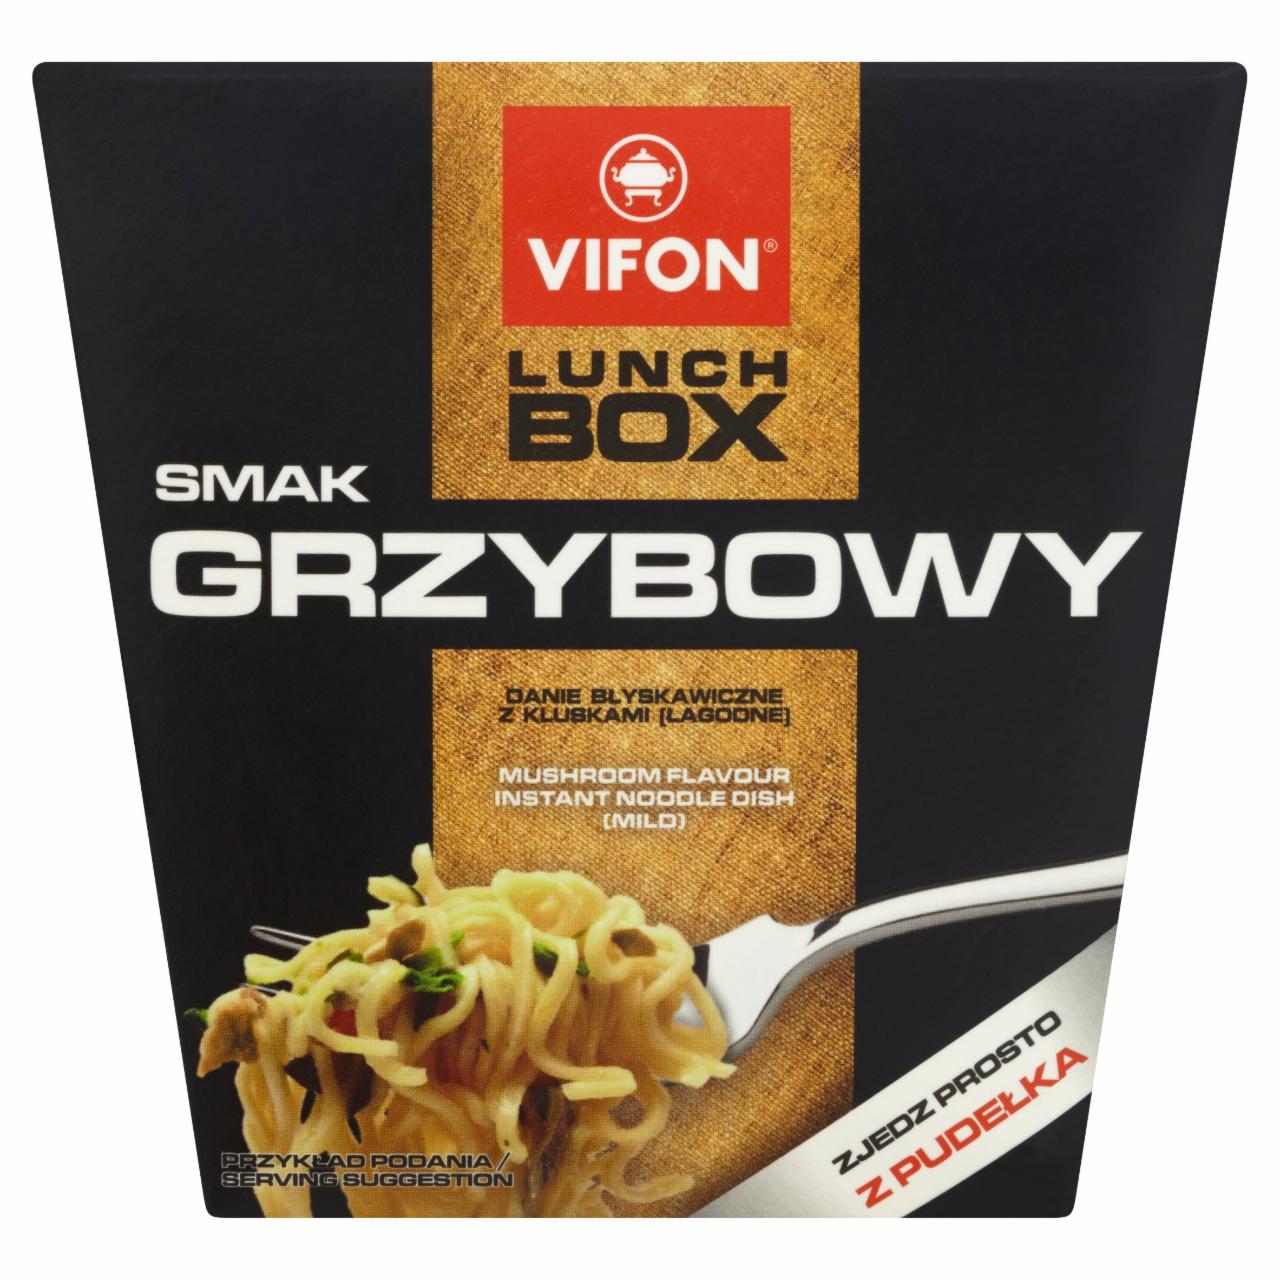 Zdjęcia - Vifon Lunch Box smak grzybowy Danie błyskawiczne z kluskami łagodne 80 g